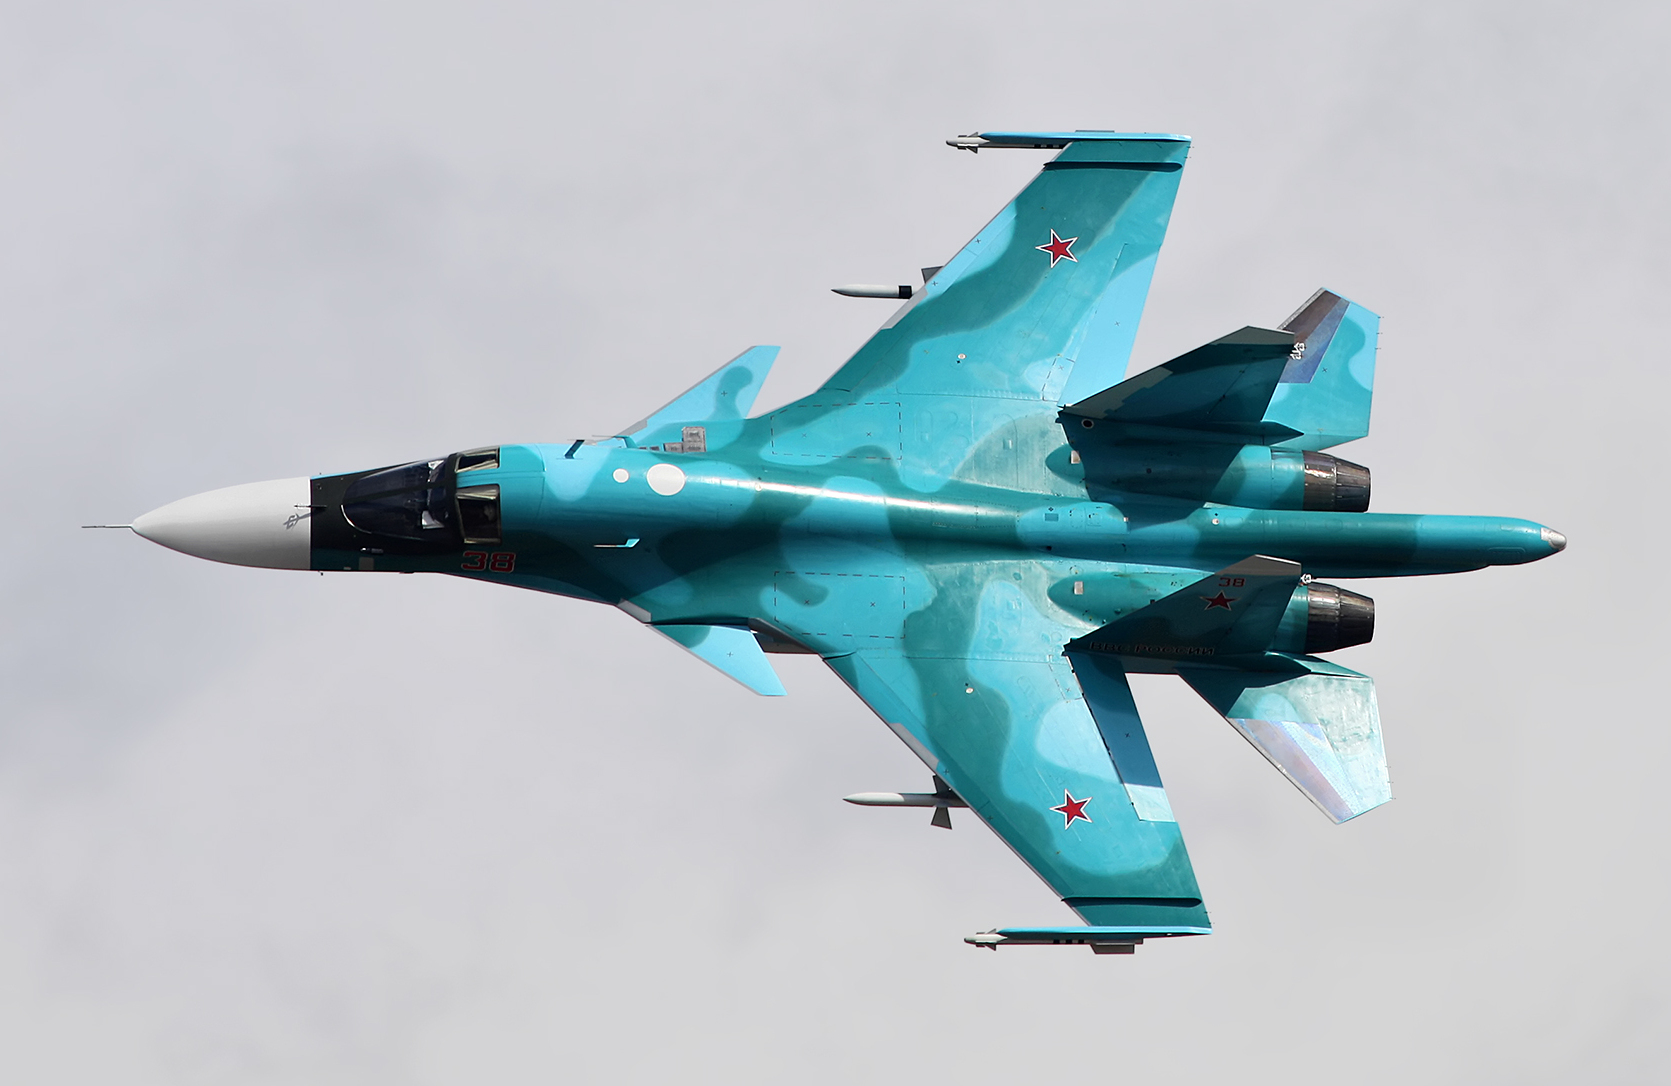 Τα ρωσικά μαχητικά βομβαρδίζουν με ασφάλεια τους Ουκρανούς χρησιμοποιώντας βλήματα stand off